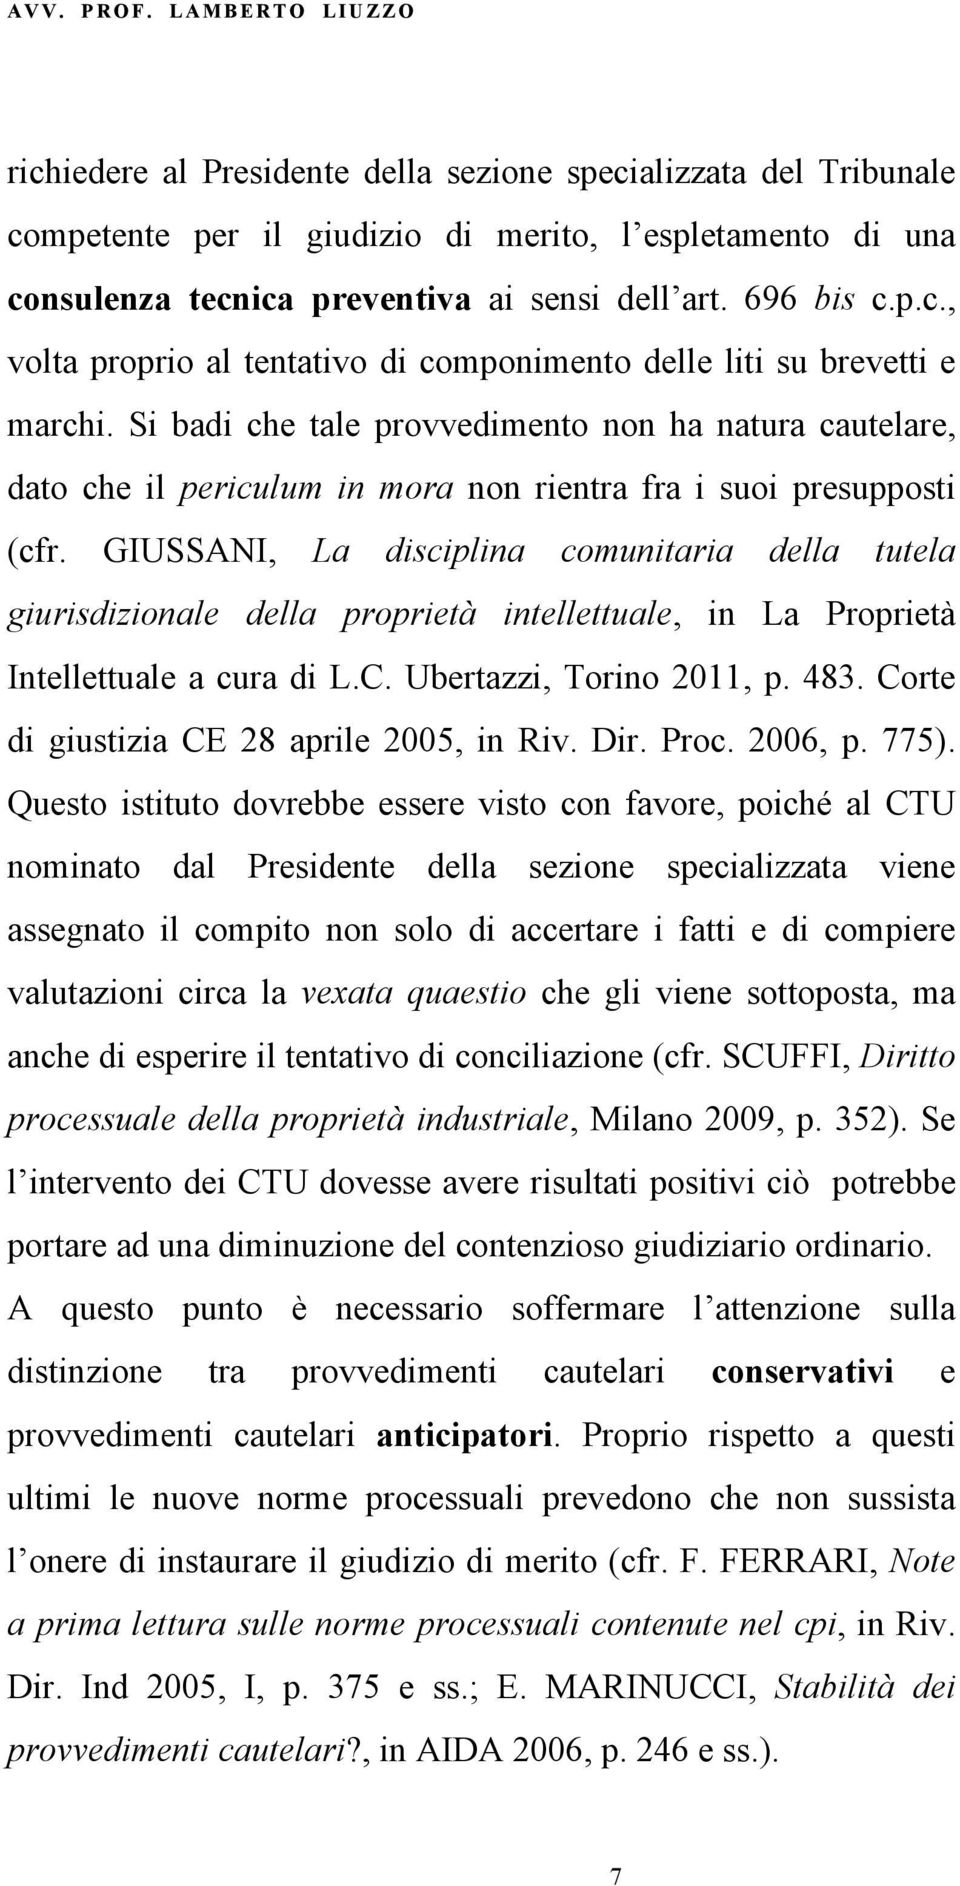 GIUSSANI, La disciplina comunitaria della tutela giurisdizionale della proprietà intellettuale, in La Proprietà Intellettuale a cura di L.C. Ubertazzi, Torino 2011, p. 483.